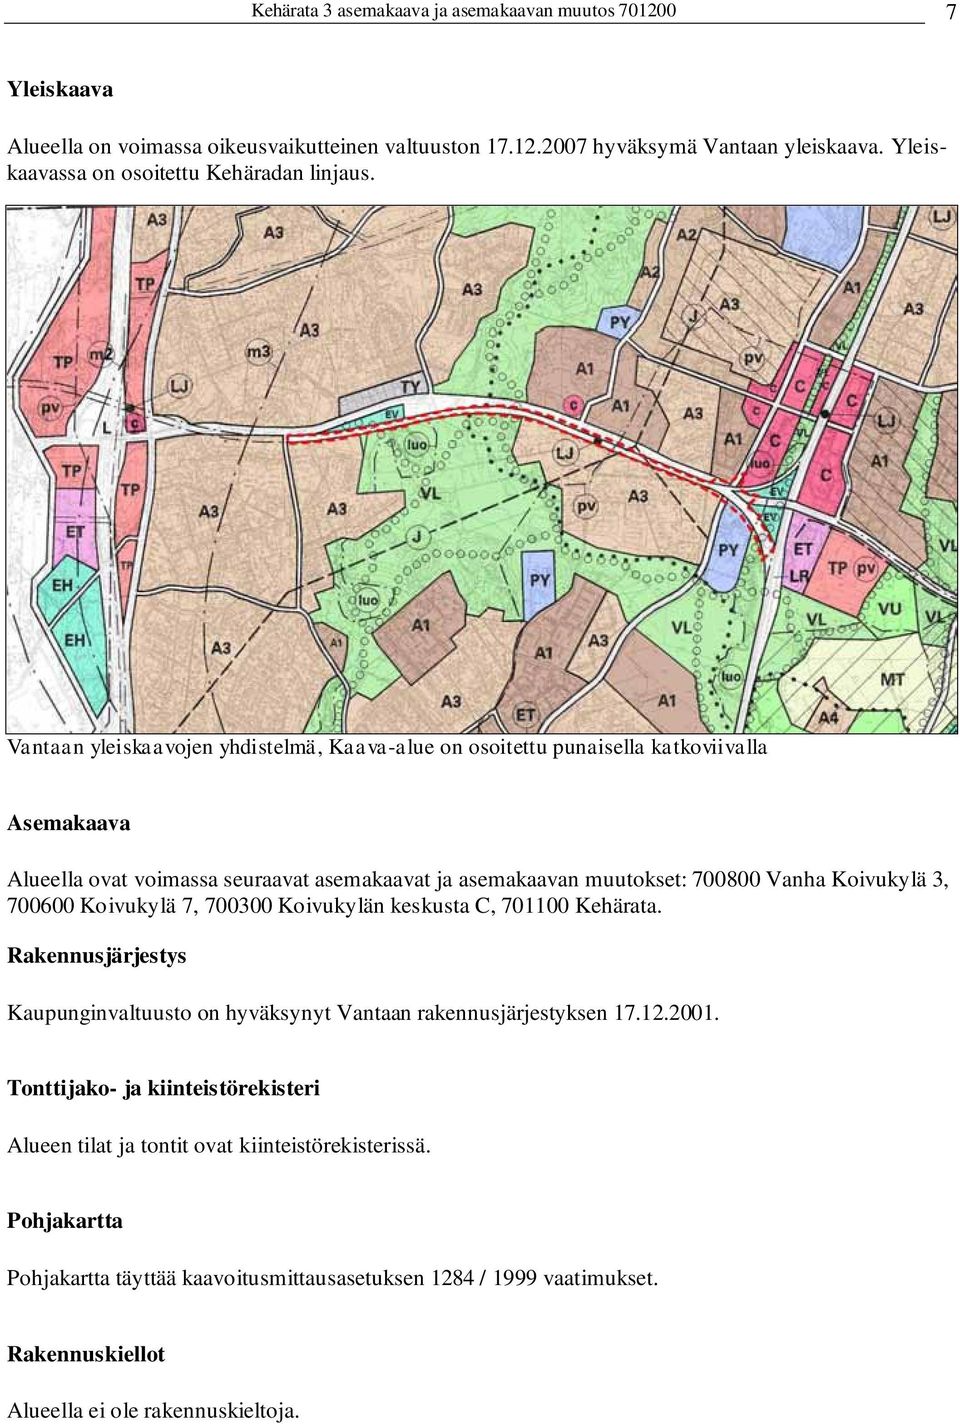 Vantaan yleiskaavojen yhdistelmä, Kaava-alue on osoitettu punaisella katkoviivalla Asemakaava Alueella ovat voimassa seuraavat asemakaavat ja asemakaavan muutokset: 700800 Vanha Koivukylä 3,